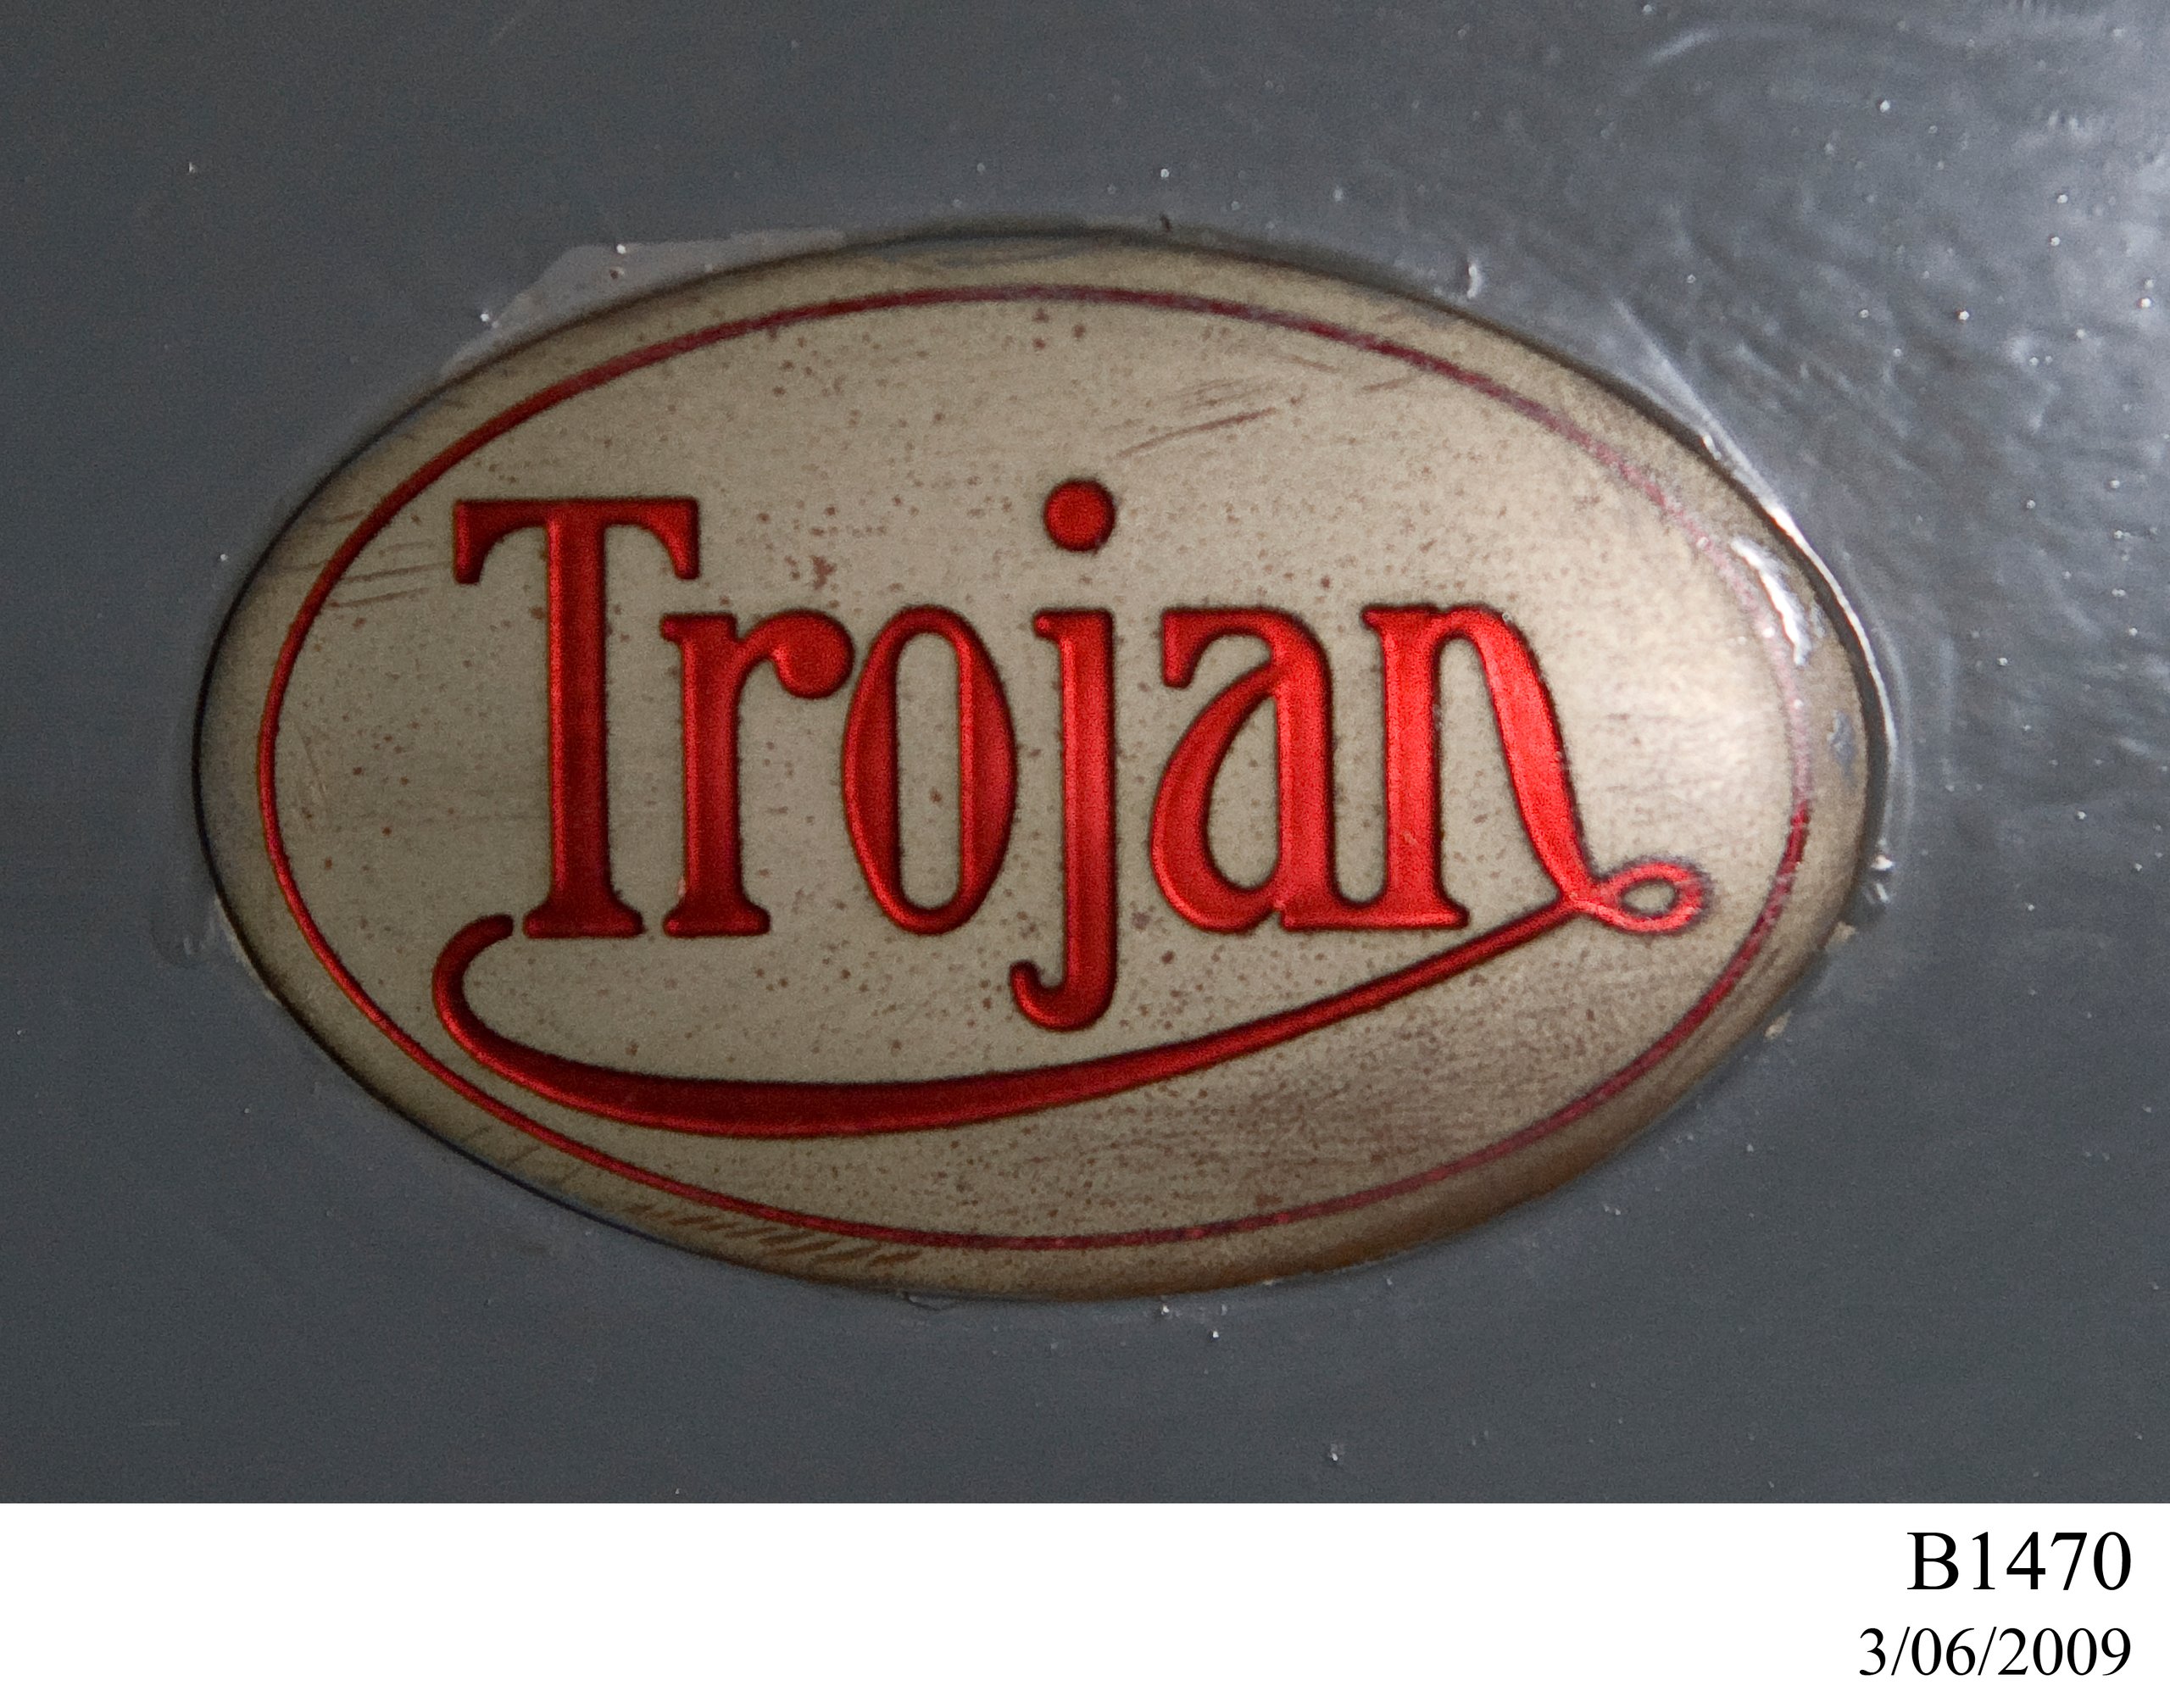 1926 Trojan 3-door, 10hp tourer